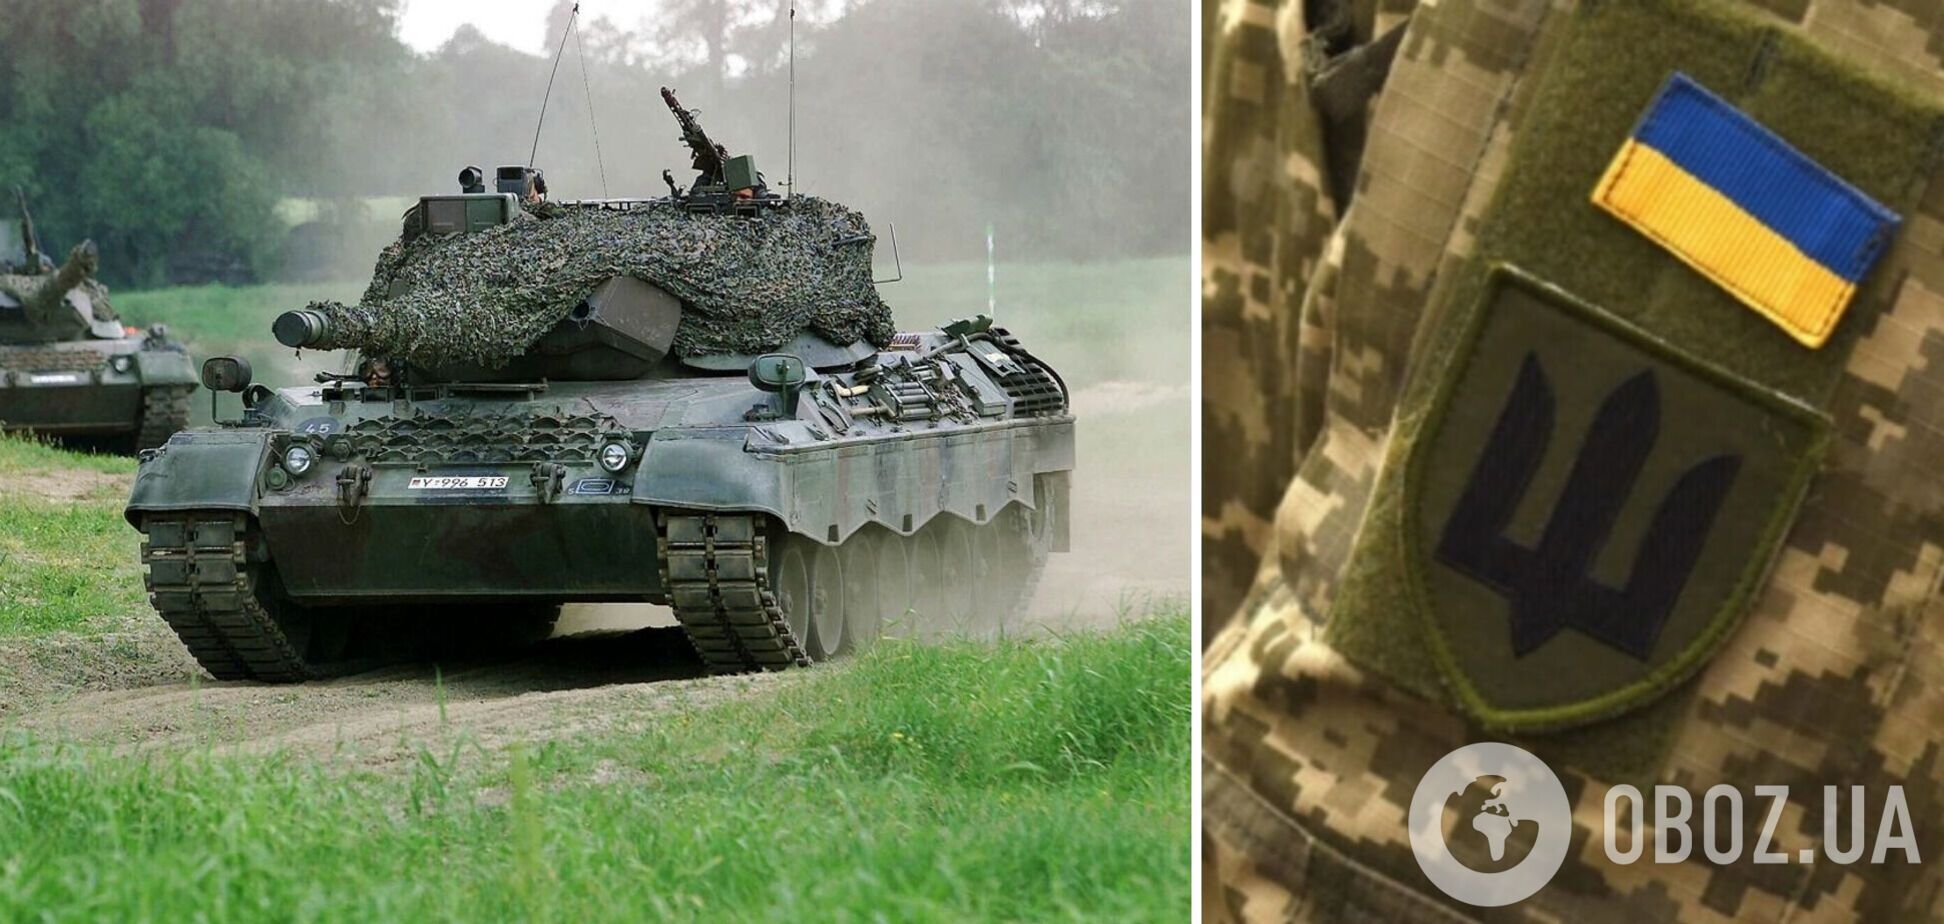 Перша партія з 10 коаліційних танків Leopard 1 вже в Україні – міноборони Данії